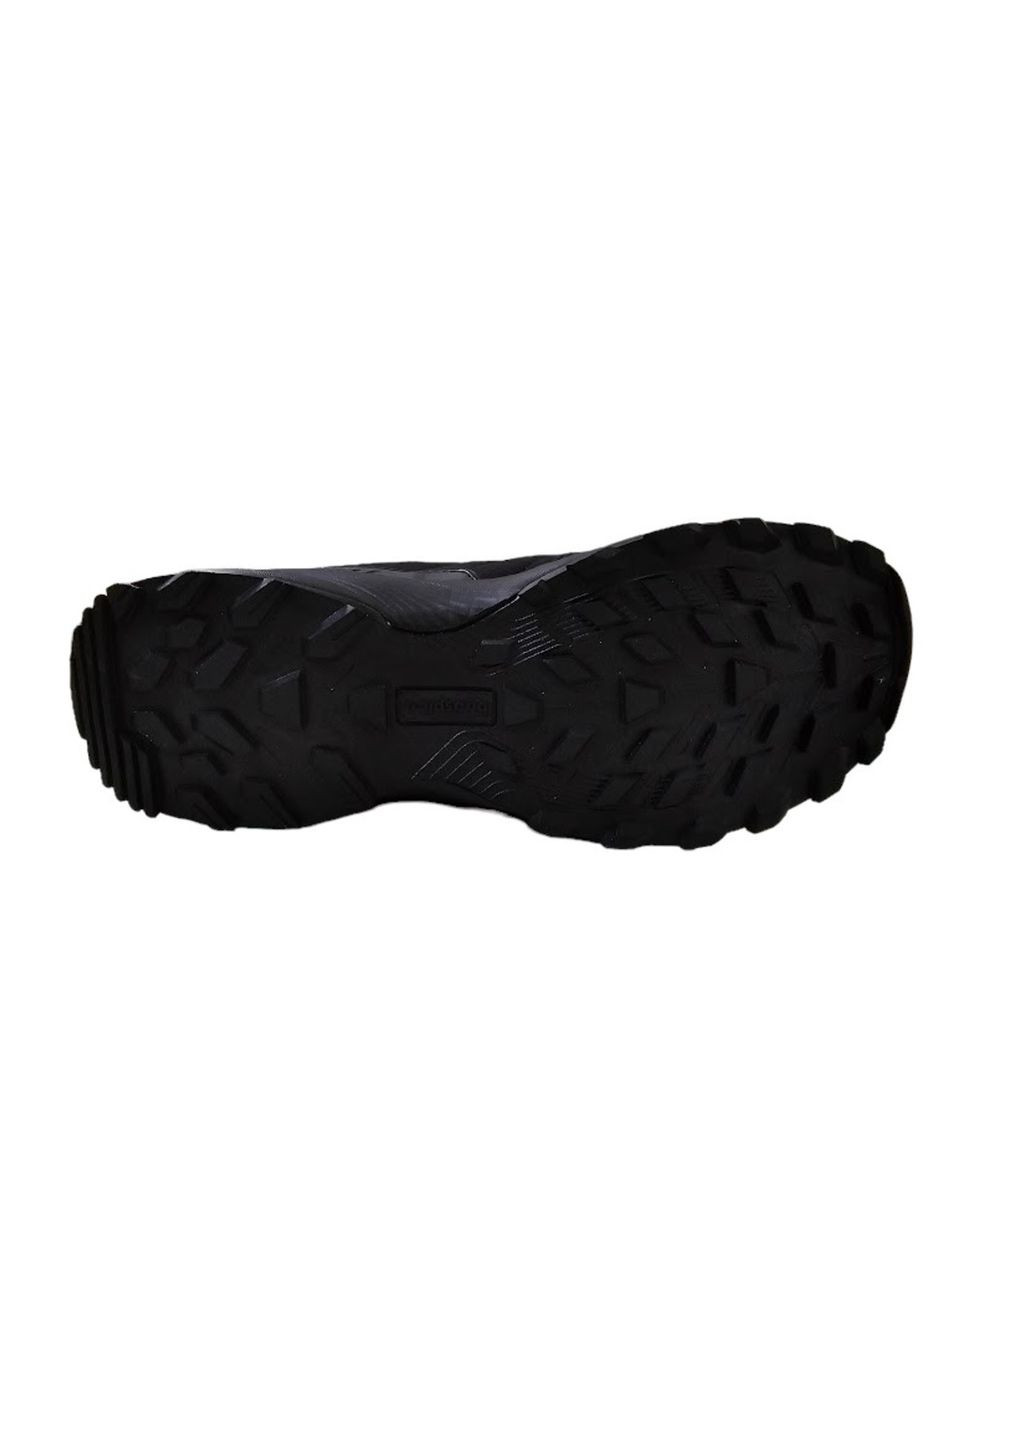 Черные демисезонные кроссовки мужские, термозащита, водозащищенные, вьетнам Baas Black Waterproof